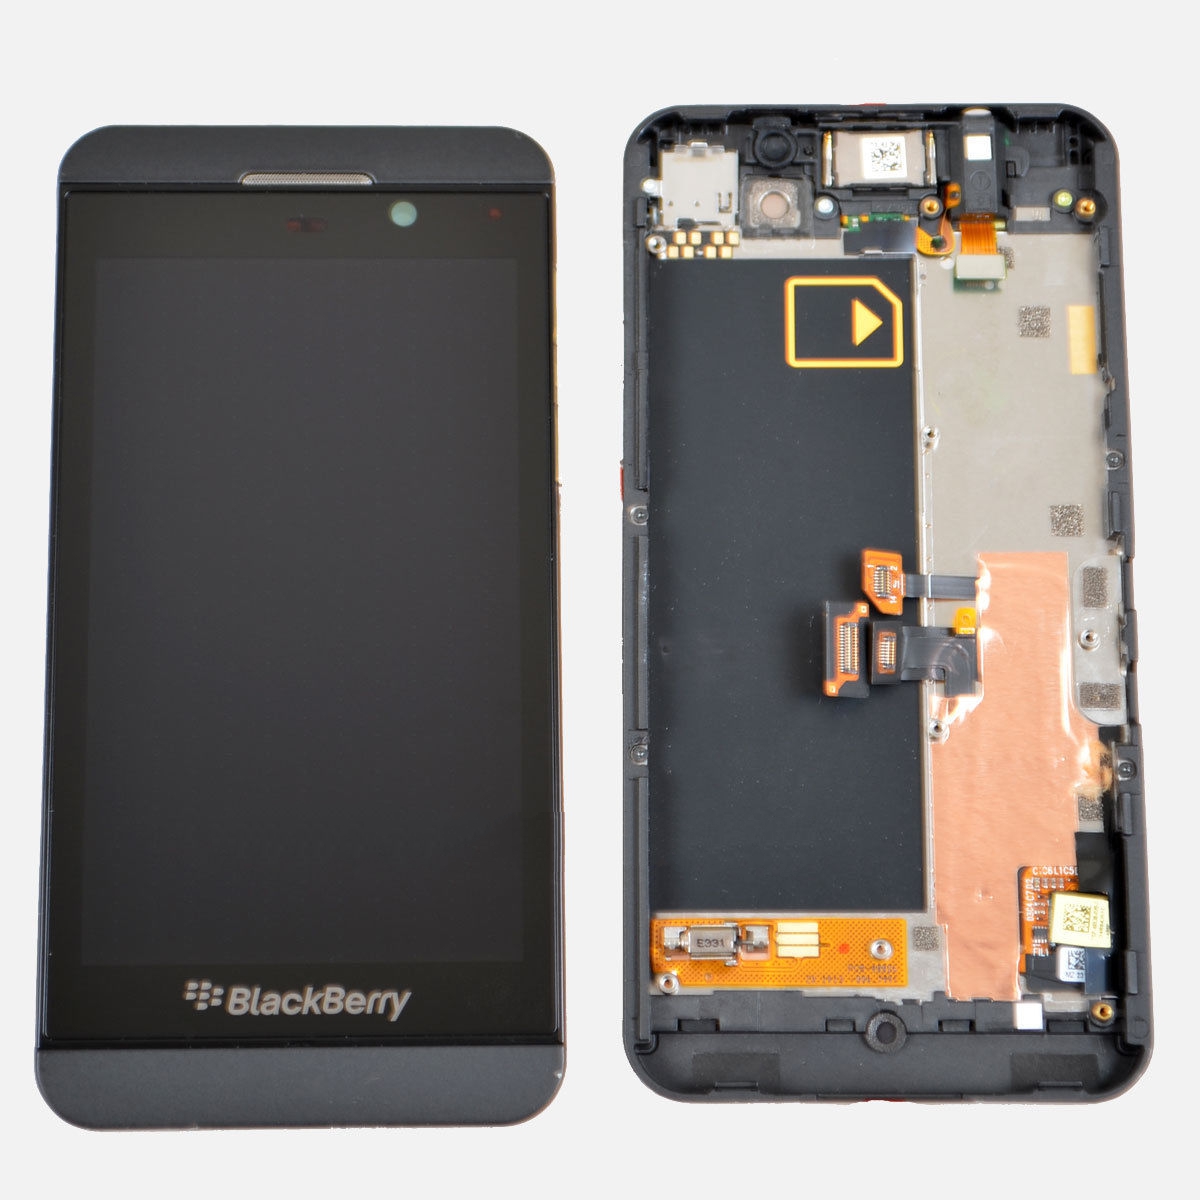 LCD Blackberry Z10 3G + Touch Screen fullset orisinil 